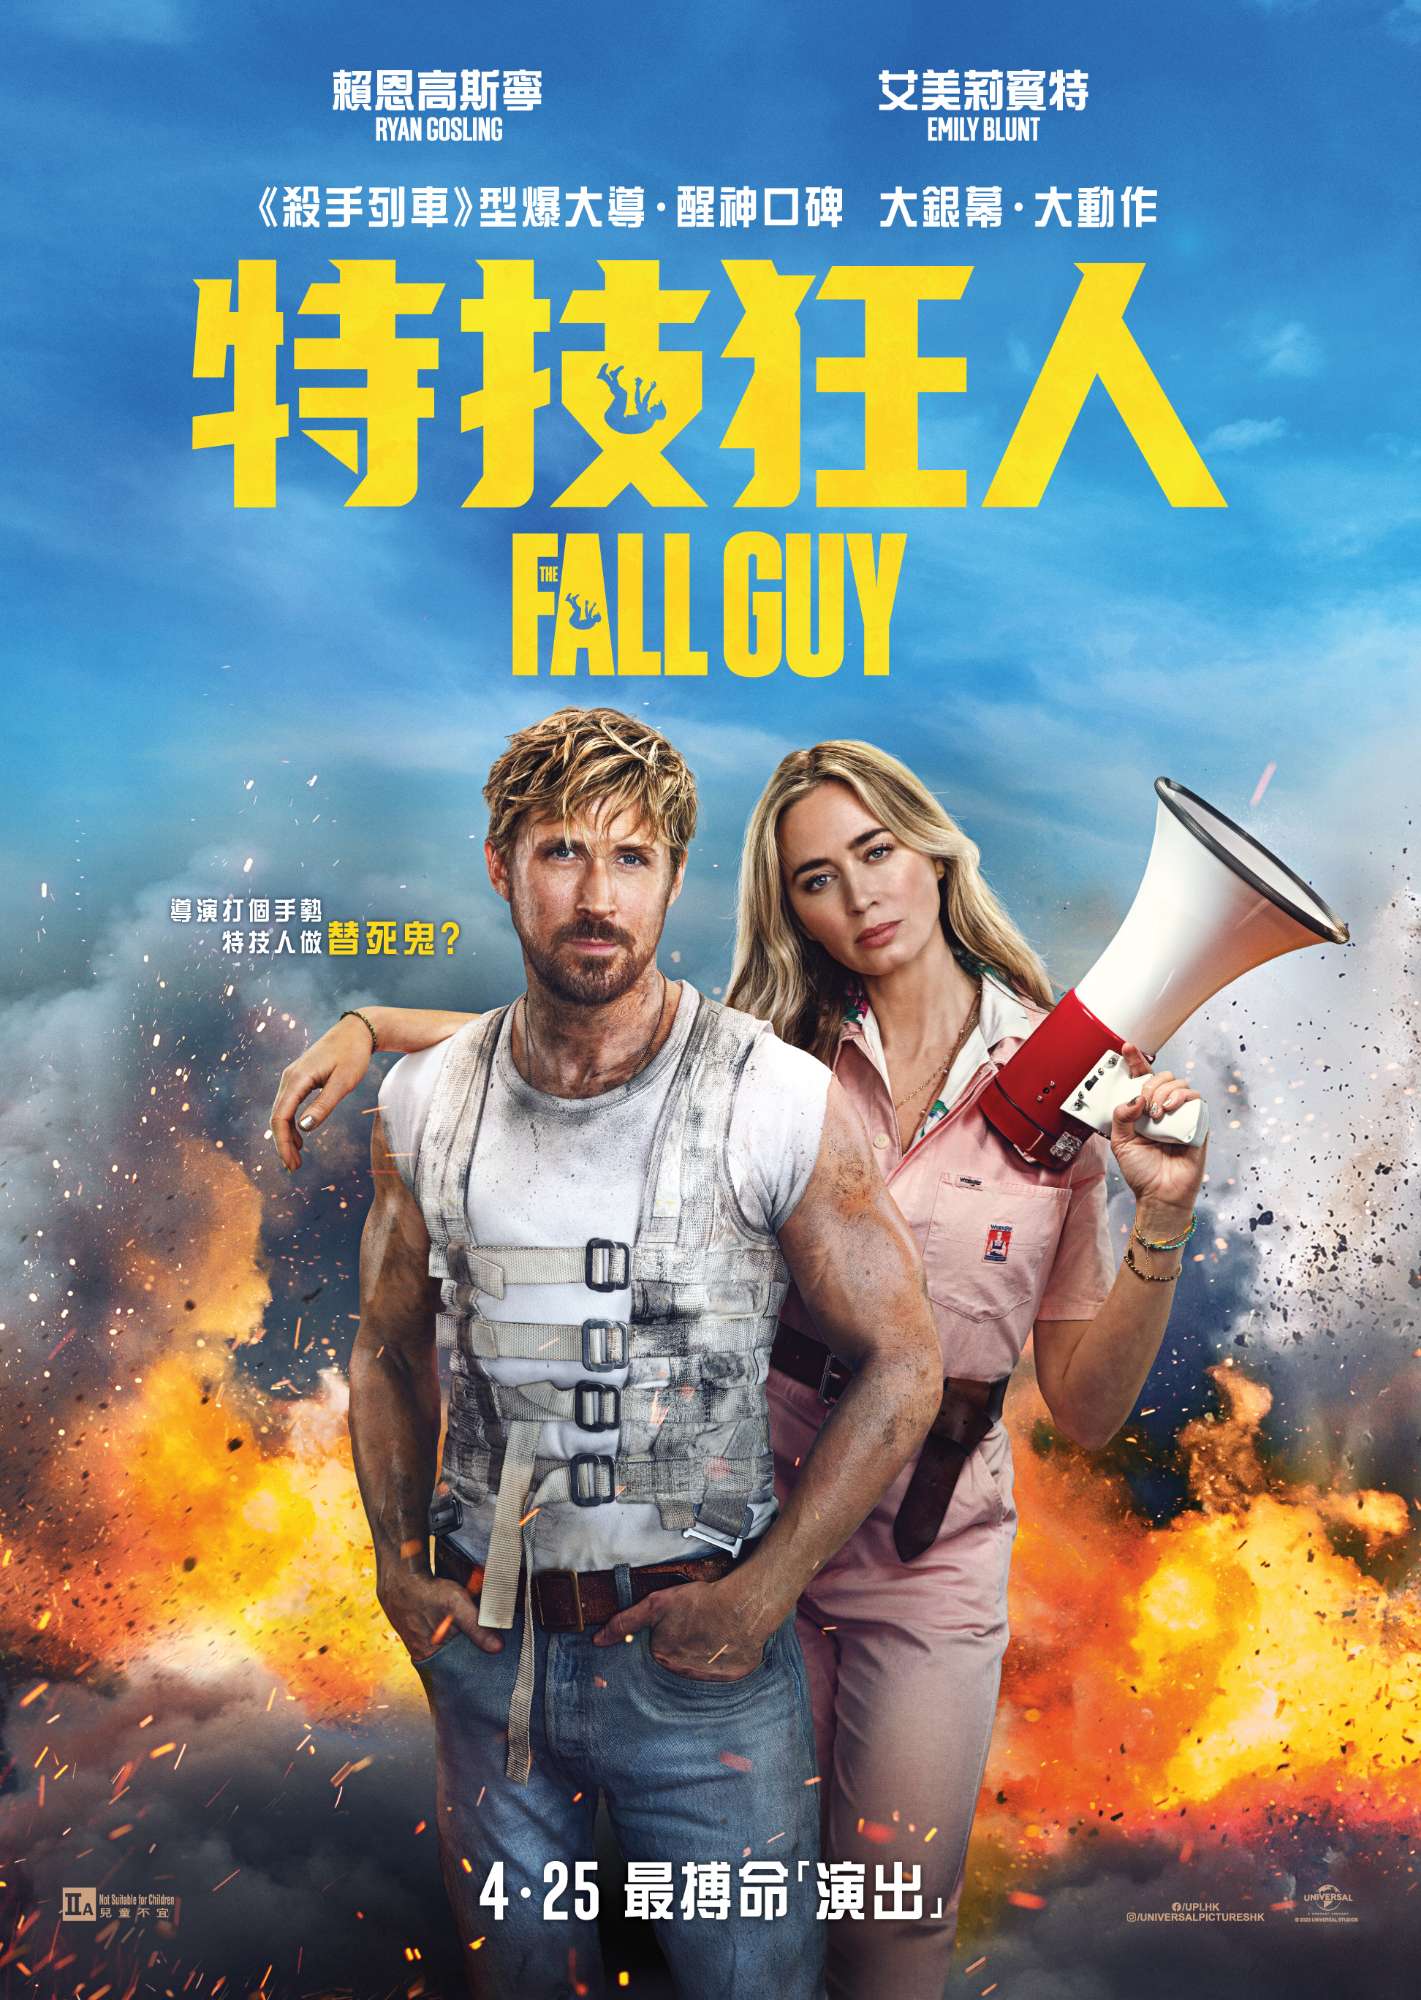 FALL GUY - HK 1st poster_megaphone_1sheet.jpg